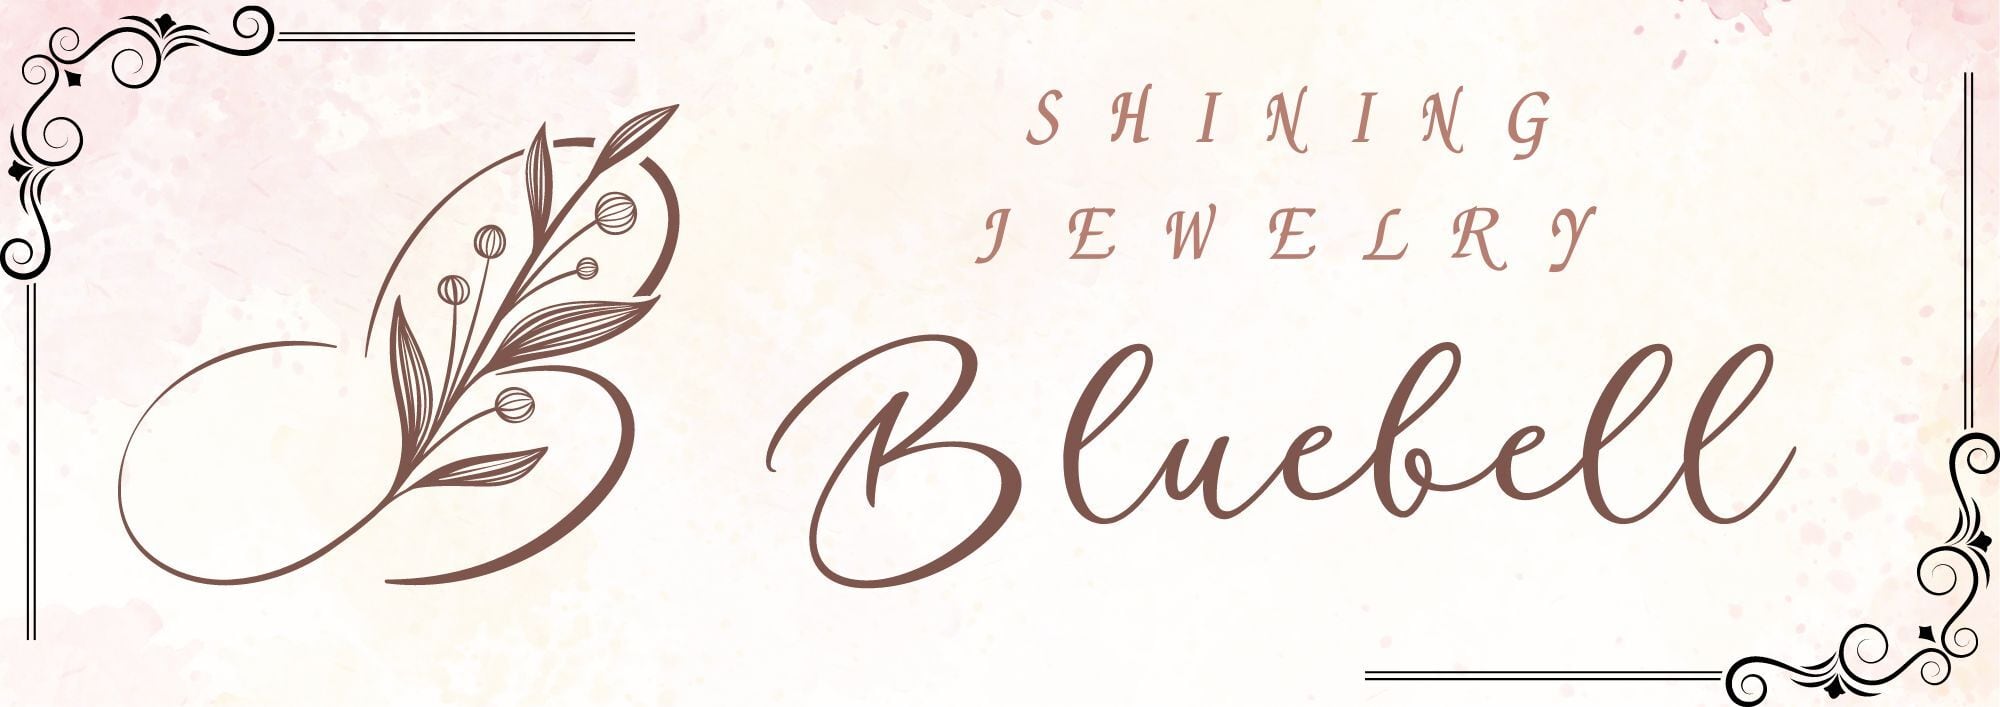 Shiningjewelry Blue-Bell